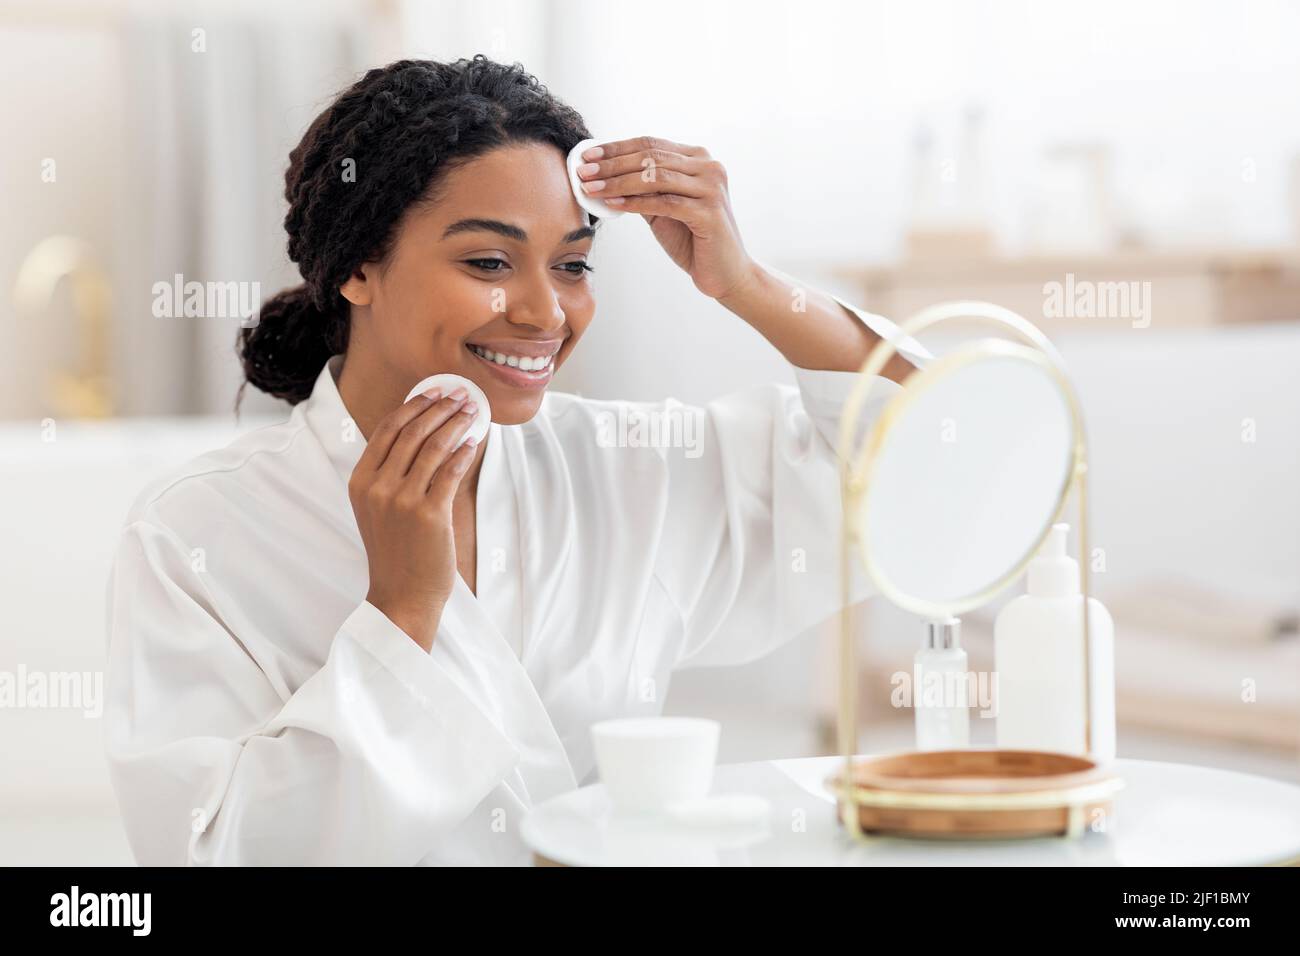 Routine di bellezza. Smiling Black Female Looking in Specchio e pulizia della pelle Foto Stock